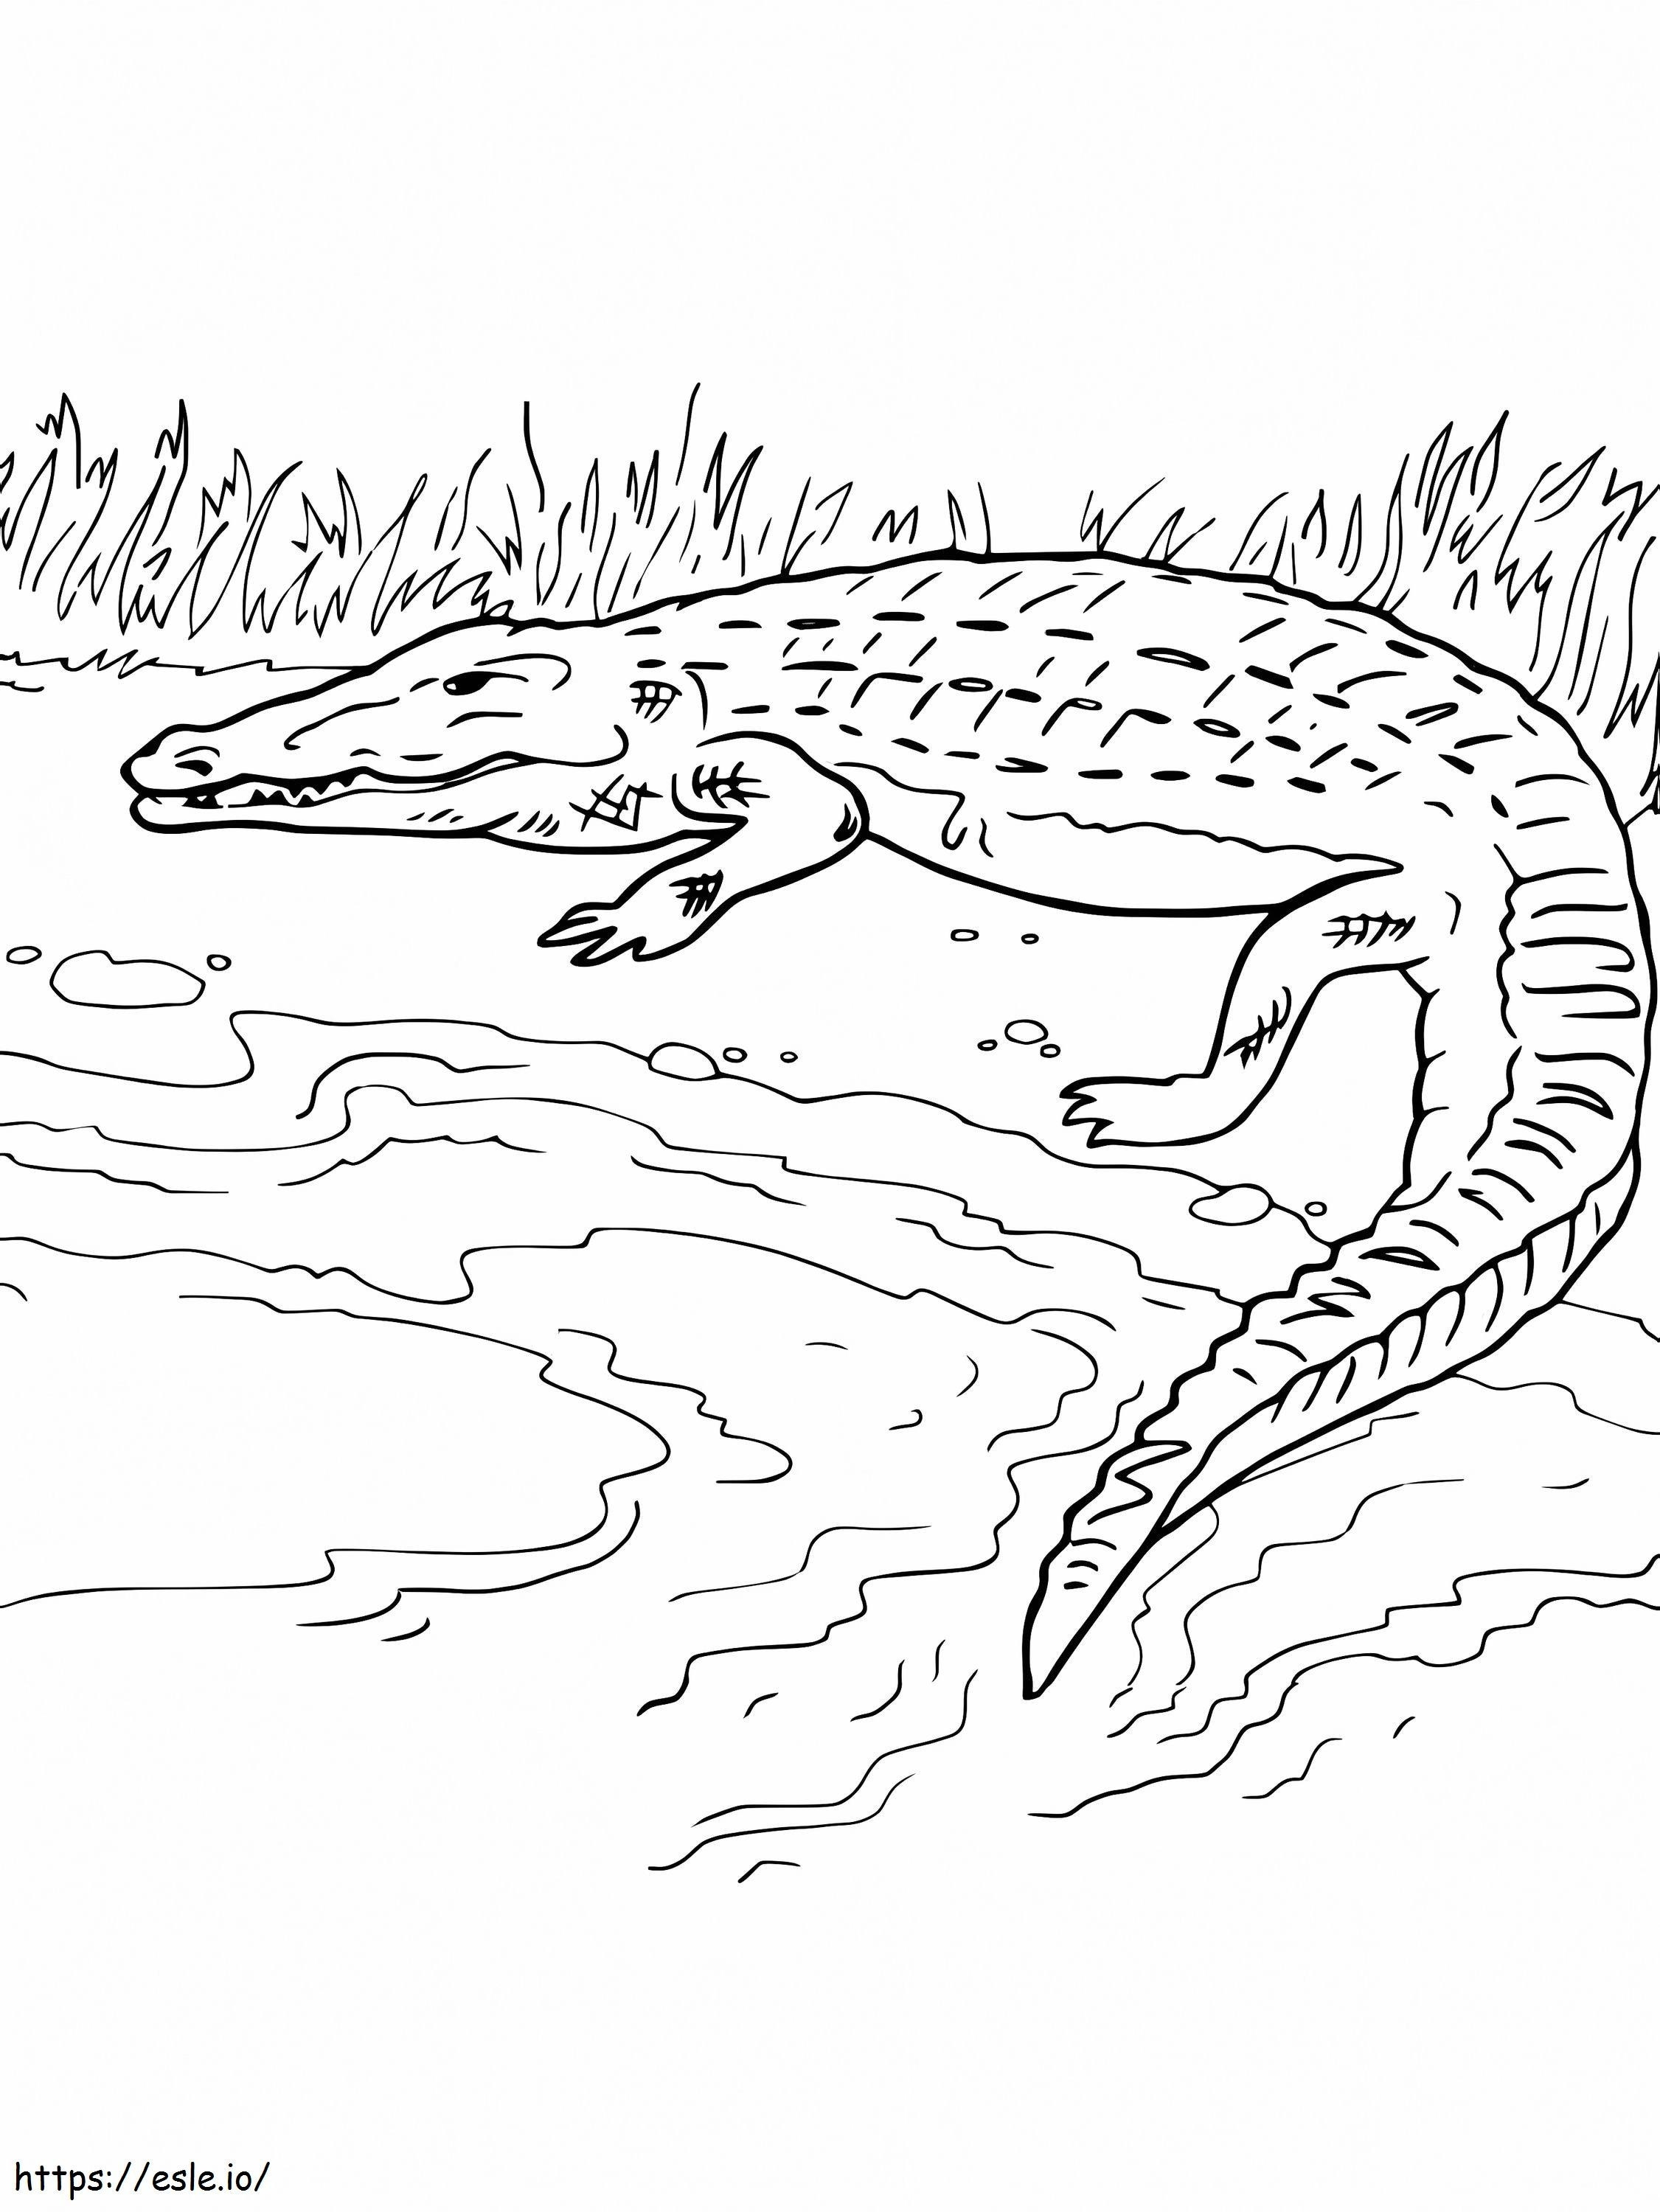 Crocodilo na margem para colorir